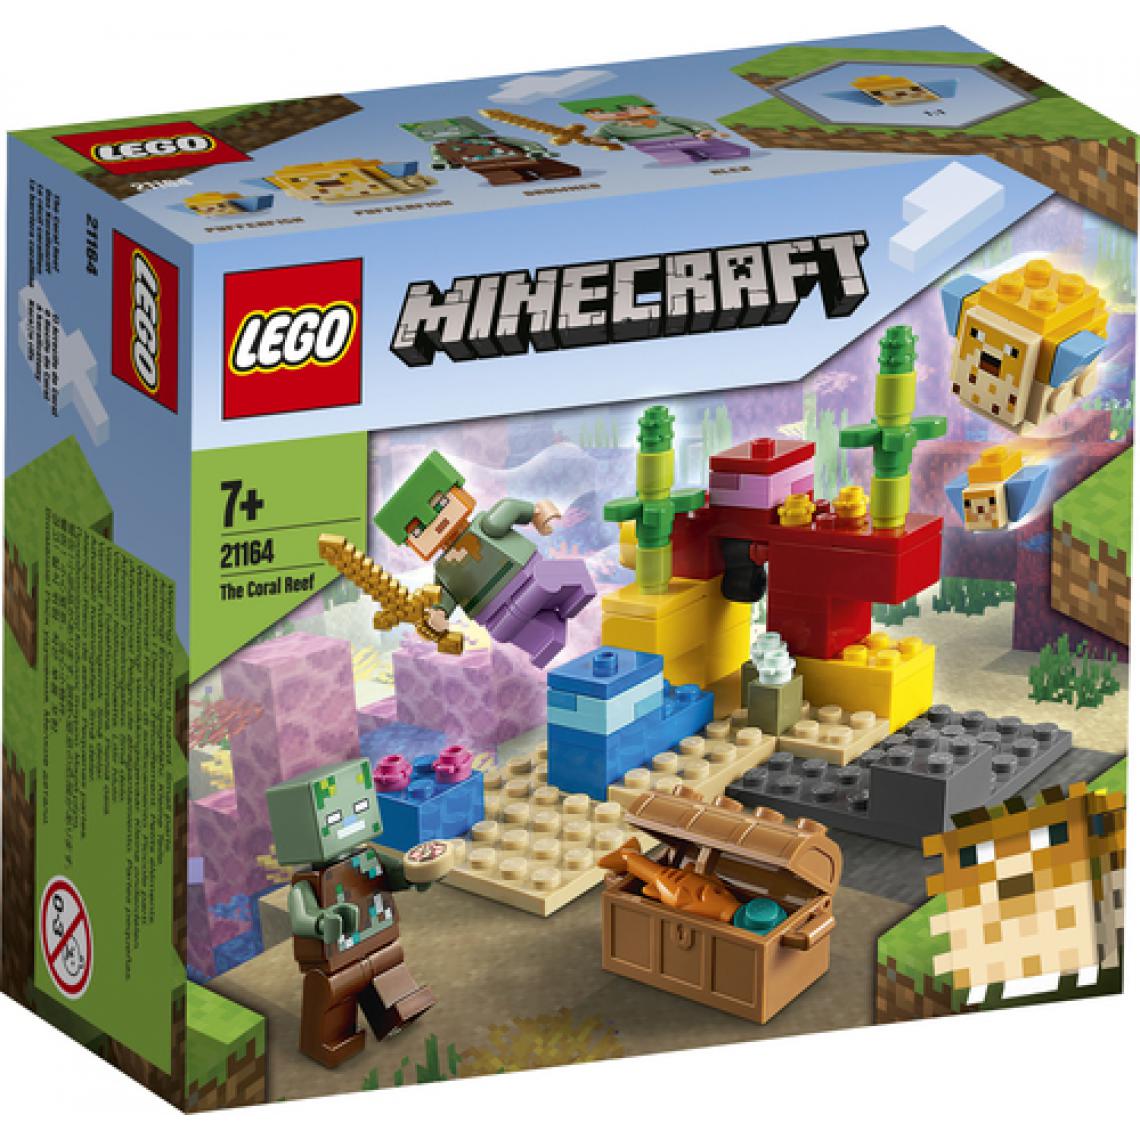 Lego - LEGO Minecraft™ 21164 Le récif de corail Jeu de construction incluant Alex, deux poissons en briques et un zombie - Briques Lego